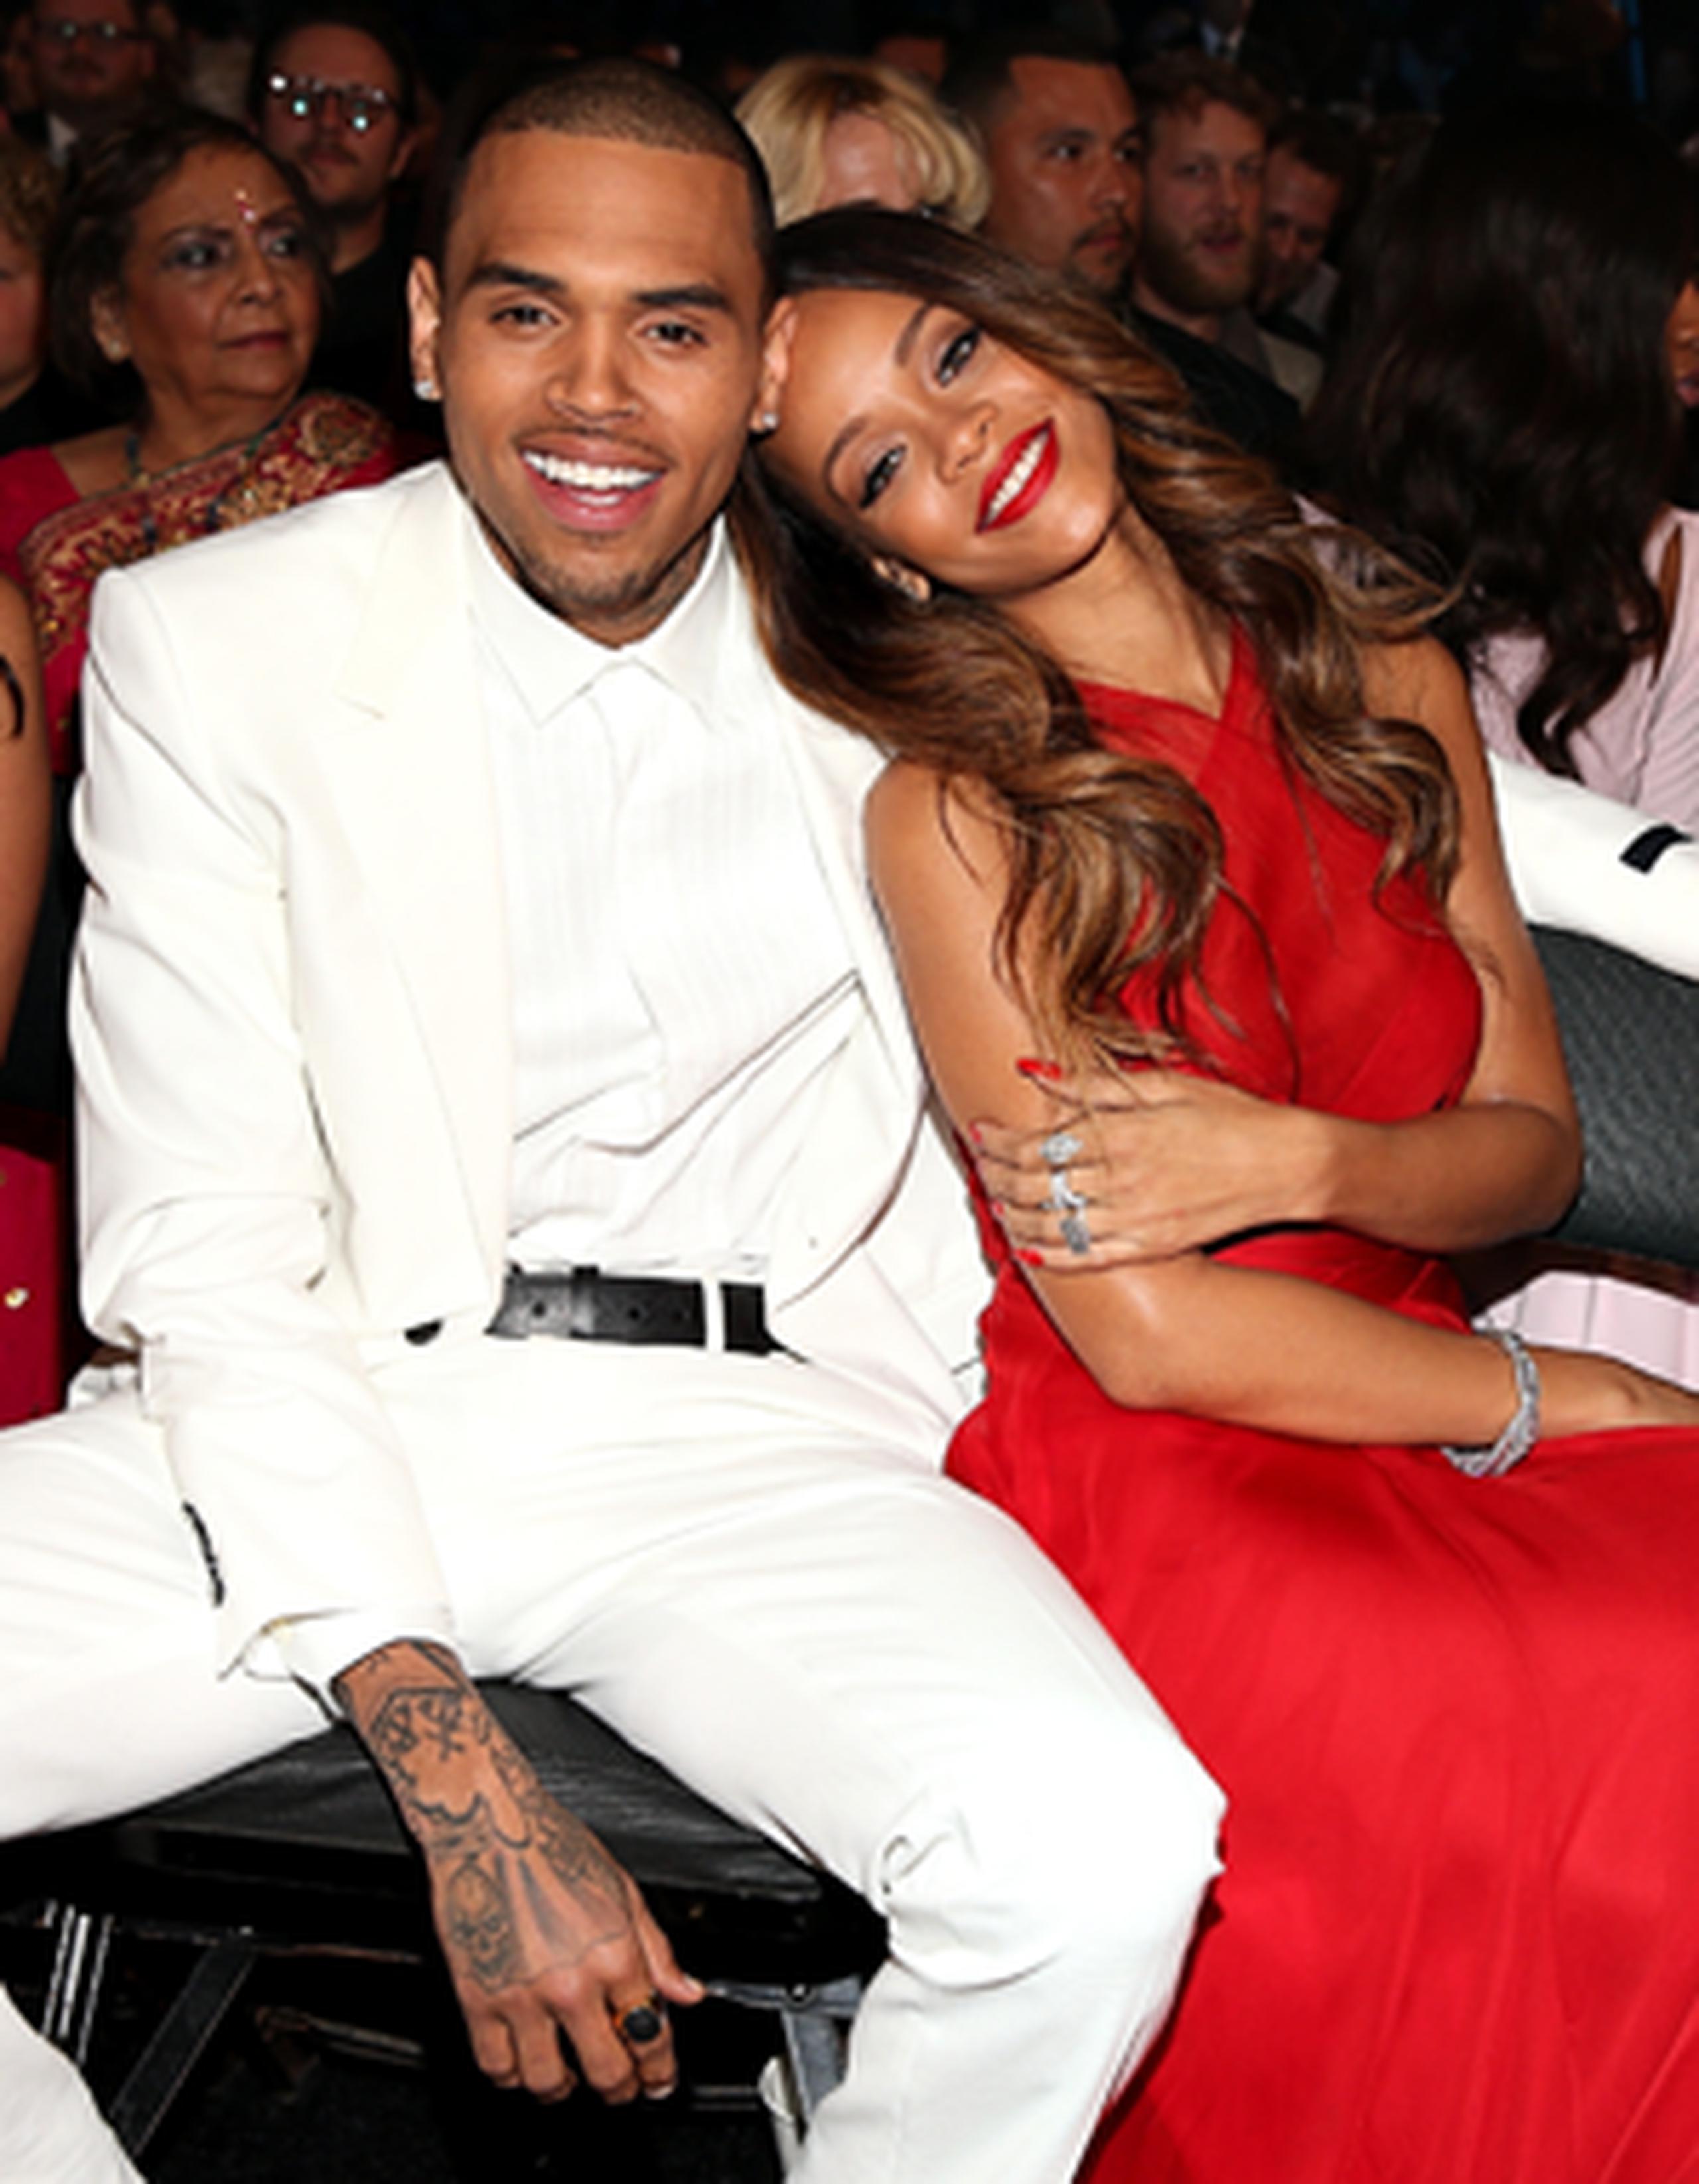 La relación entre Brown y Rihanna ha sido tormentosa y ha estado marcada por la polémica. (AP)